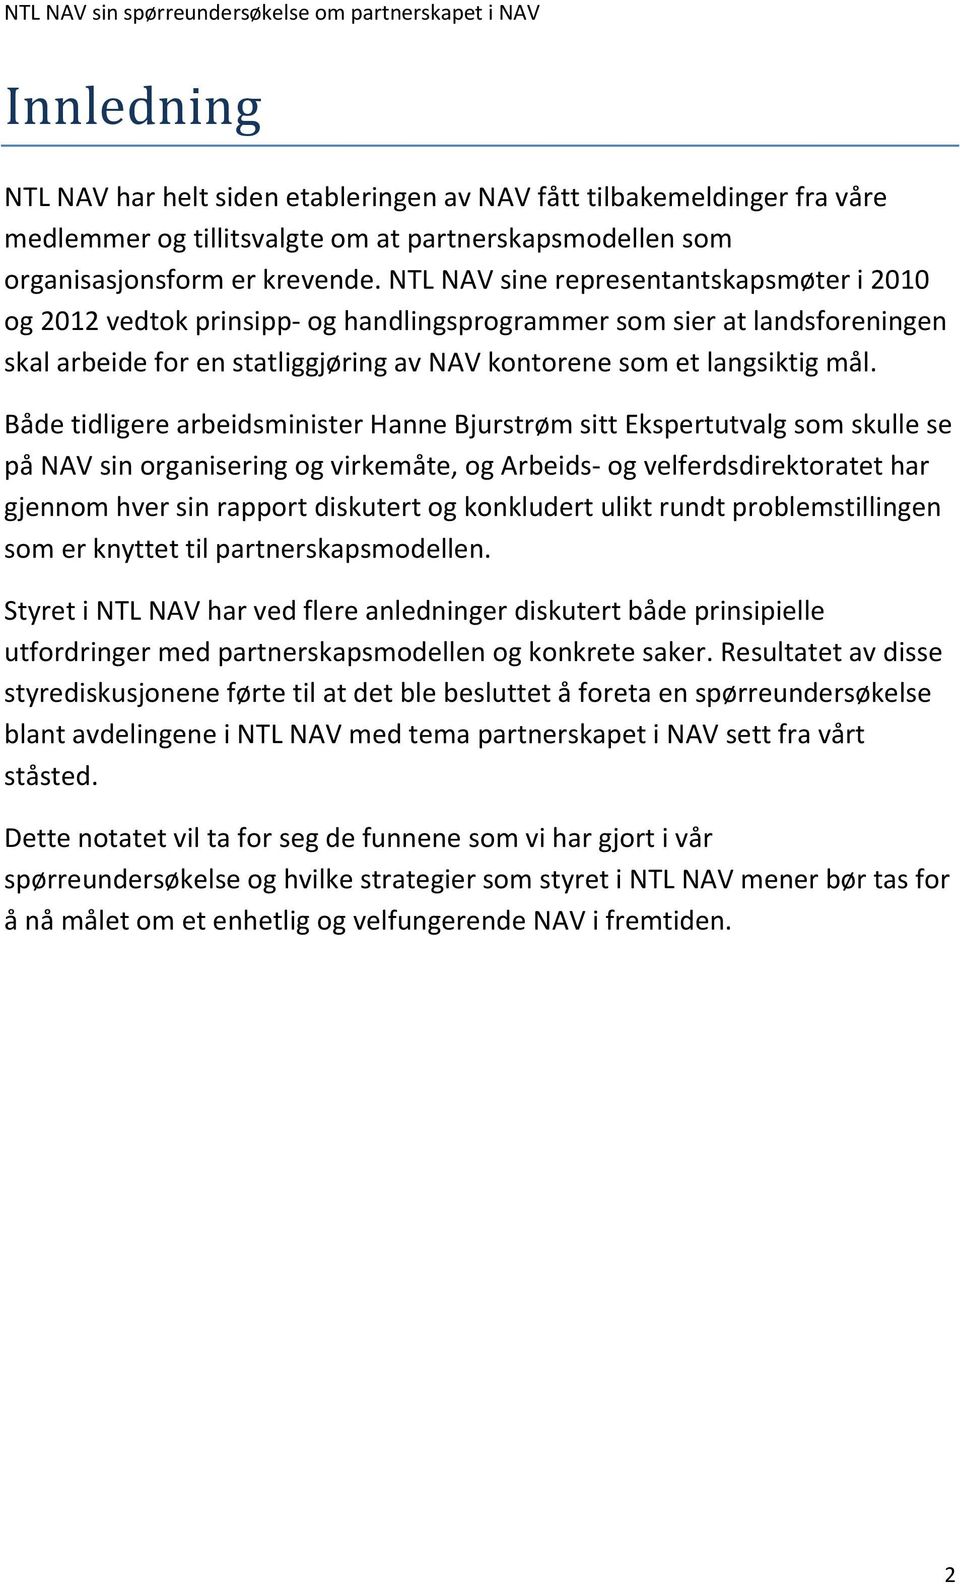 Både tidligere arbeidsminister Hanne Bjurstrøm sitt Ekspertutvalg som skulle se på NAV sin organisering og virkemåte, og Arbeids- og velferdsdirektoratet har gjennom hver sin rapport diskutert og